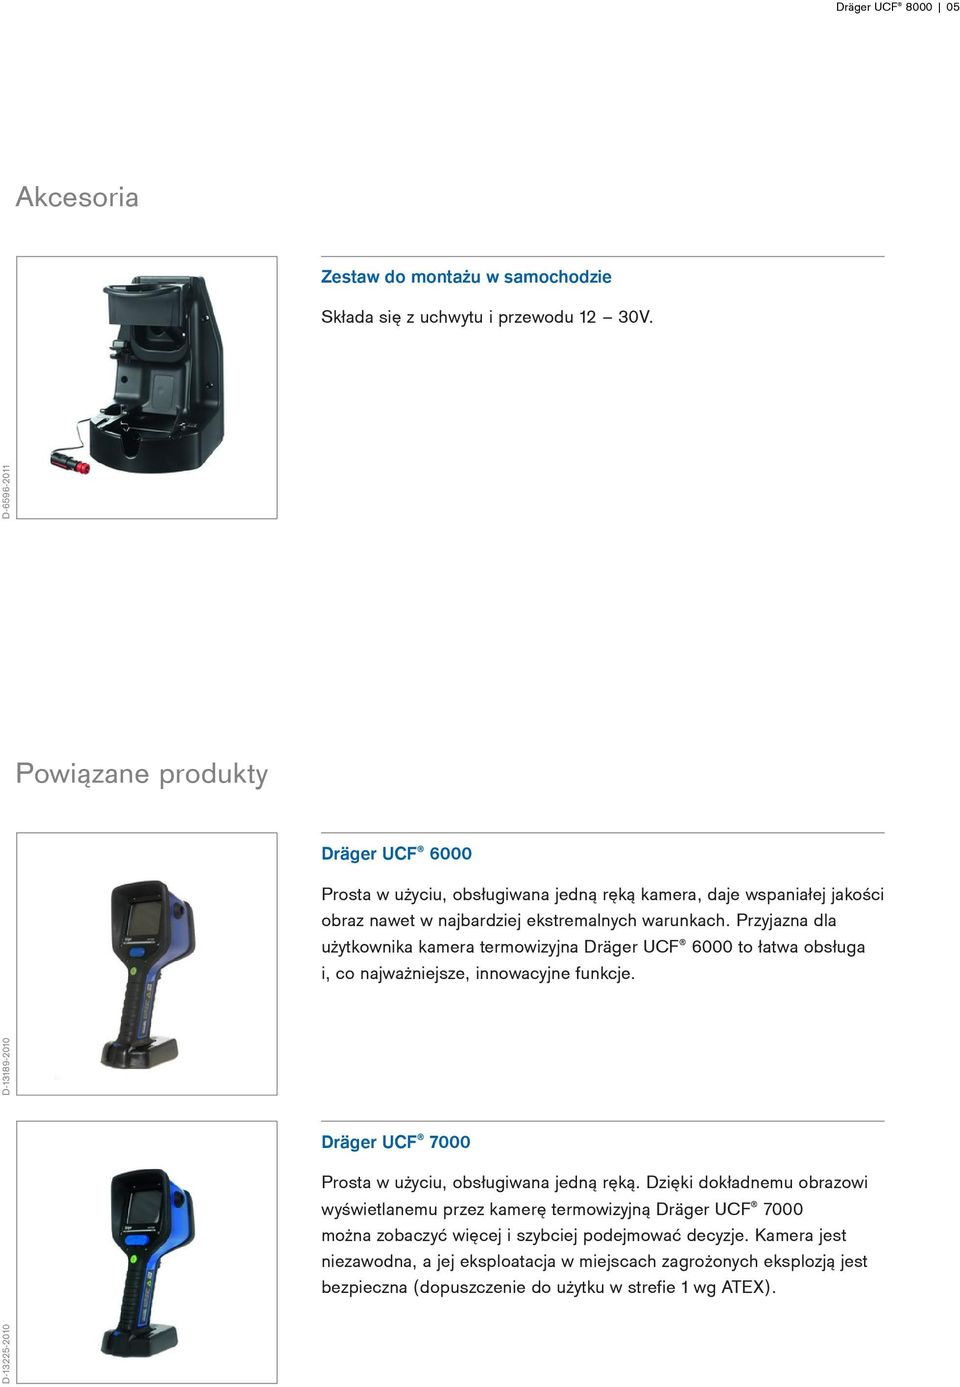 Przyjazna dla użytkownika kamera termowizyjna Dräger UCF 6000 to łatwa obsługa i, co najważniejsze, innowacyjne funkcje.